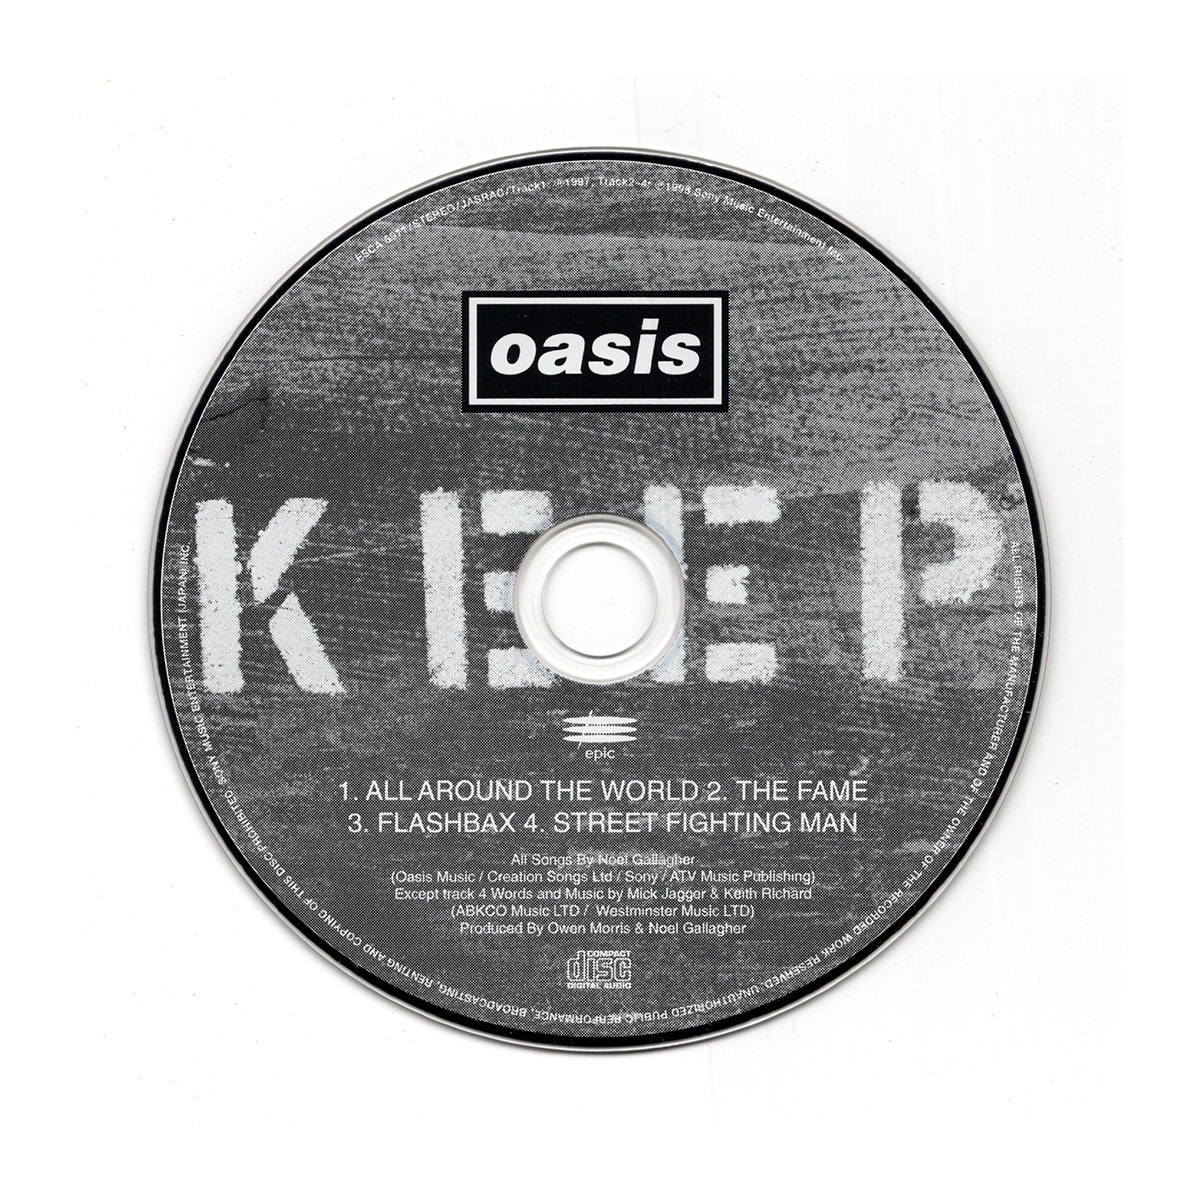  low кольцо * Stone z. покрытие сбор {CD} Oasis или sis/ All Around The World внутренний стандартный запись [ESCA 6911]